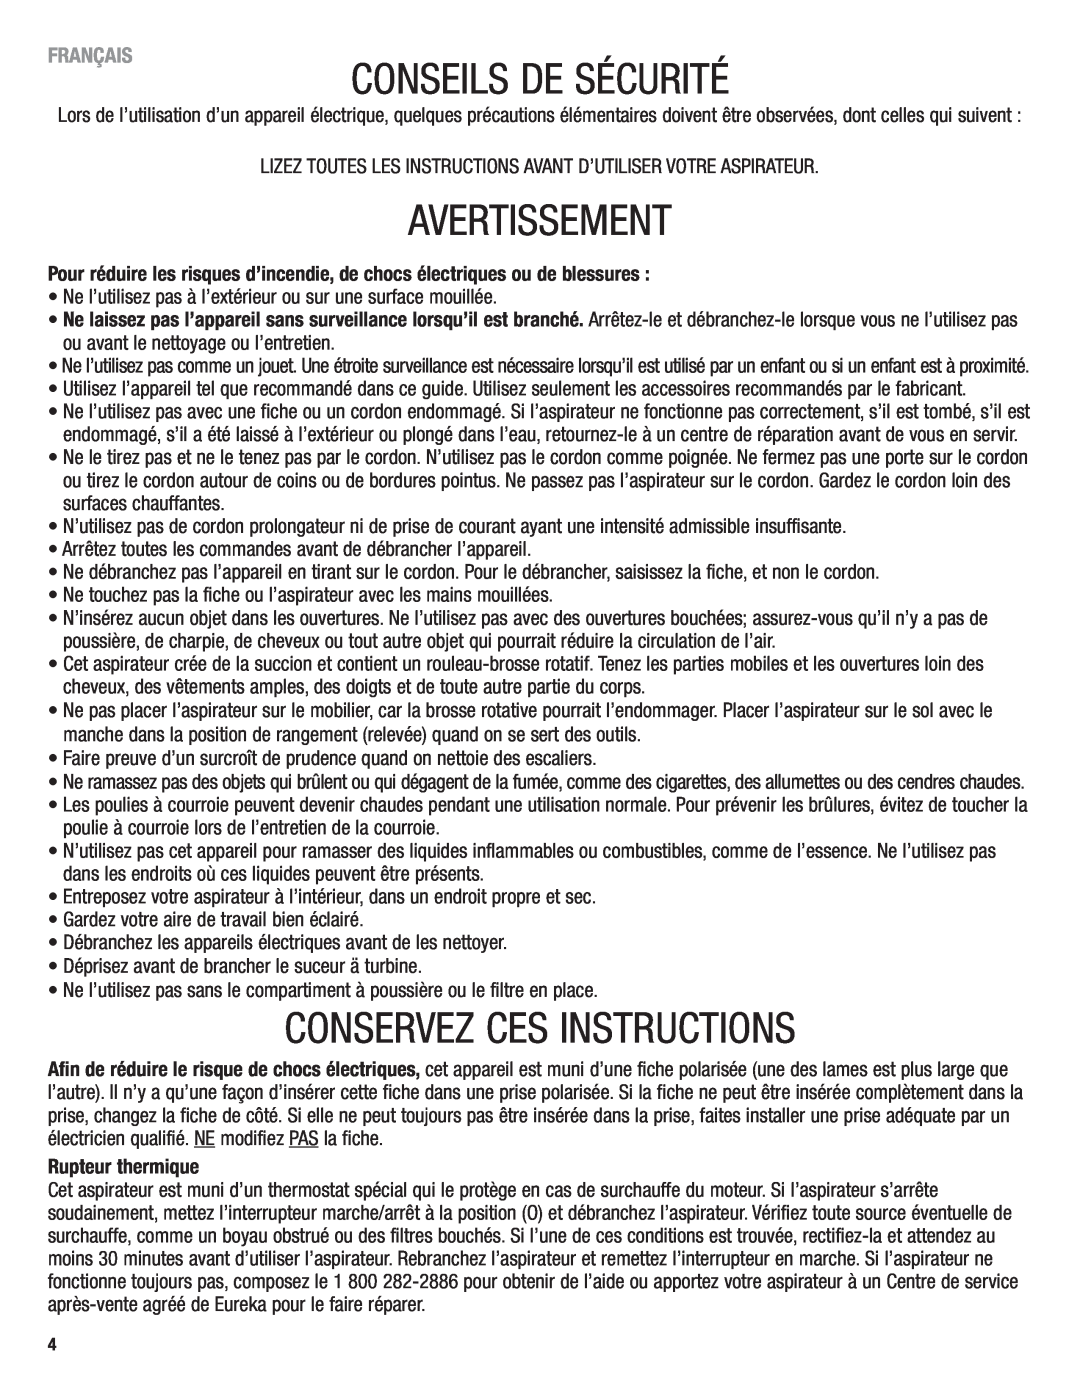 Eureka 4750 manual Conseils De Sécurité, Avertissement, Conservez Ces Instructions, Rupteur thermique, Français 